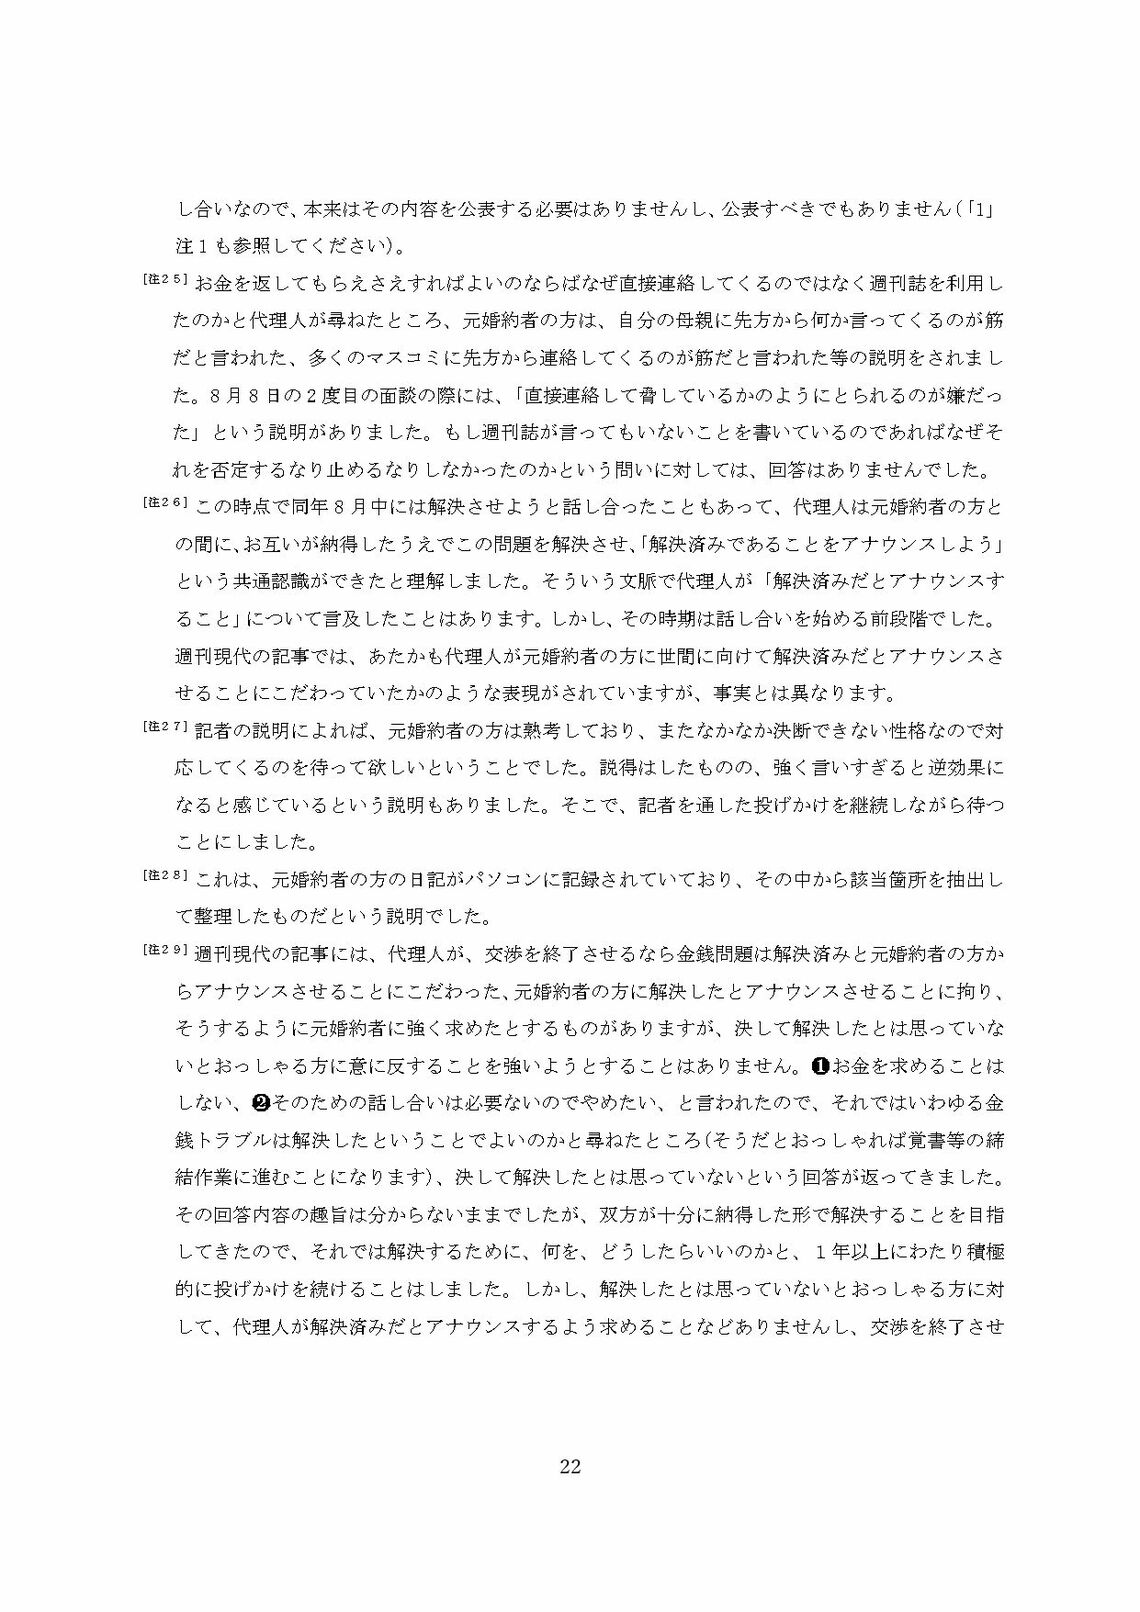 小室圭氏の代理人より届いた文書本文の脚注（22ページ目）（写真：週刊女性PRIME）